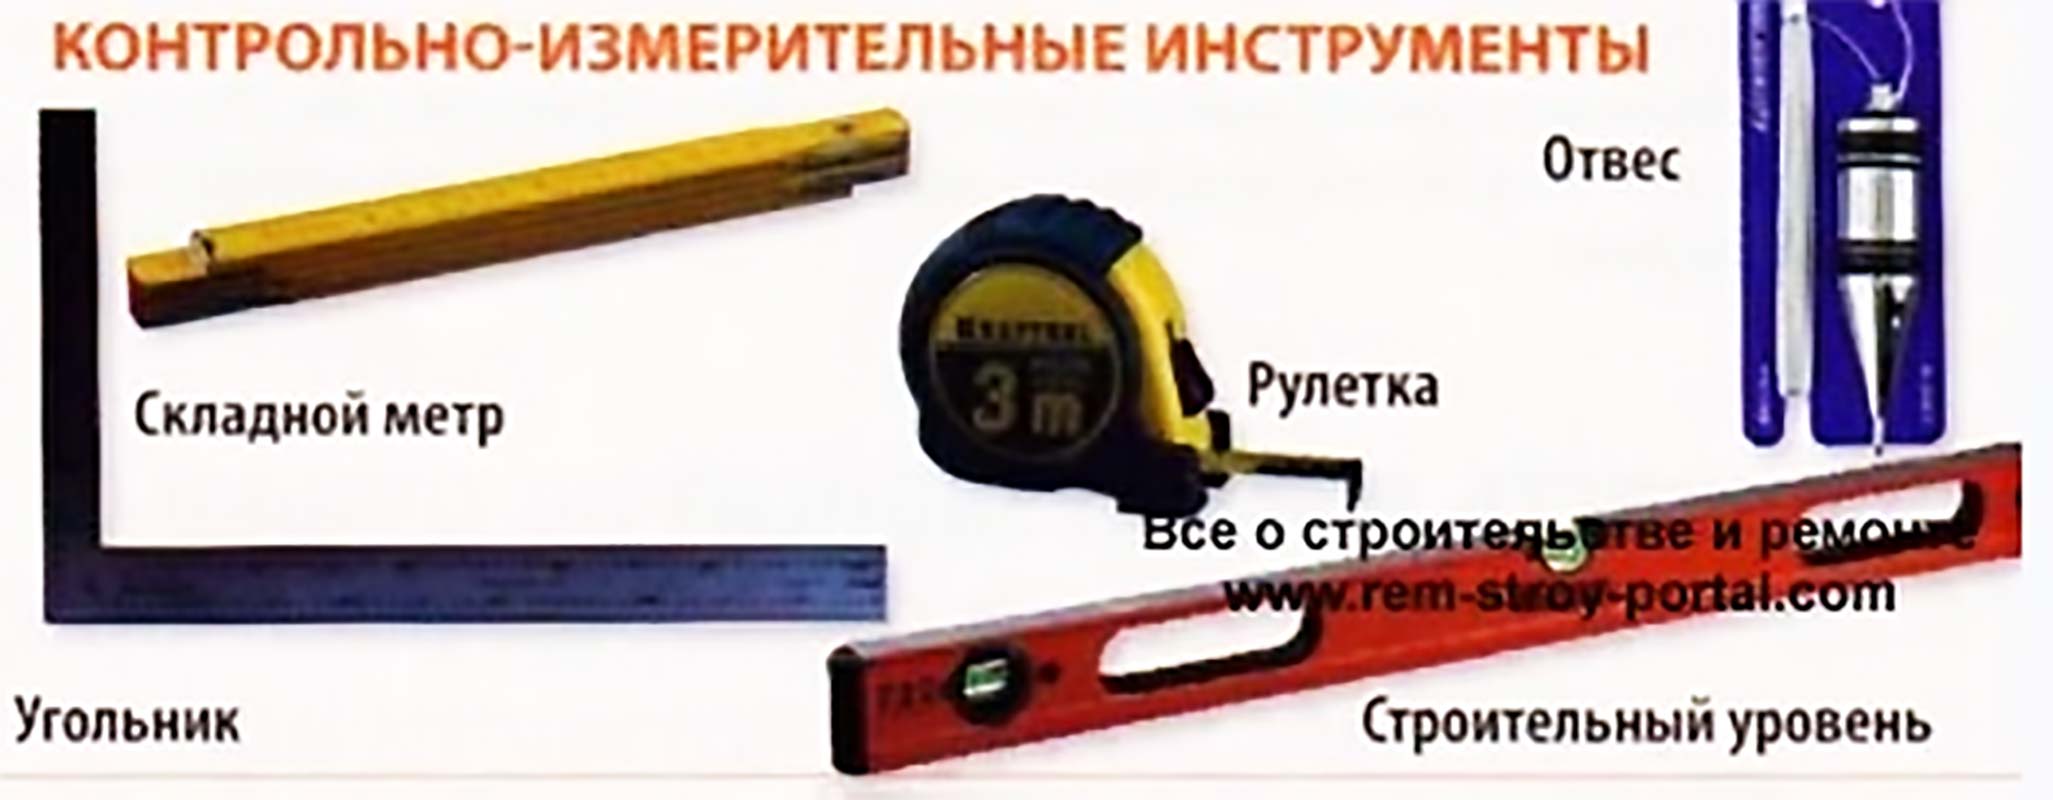 Контрольно-измерительные инструменты каменщика